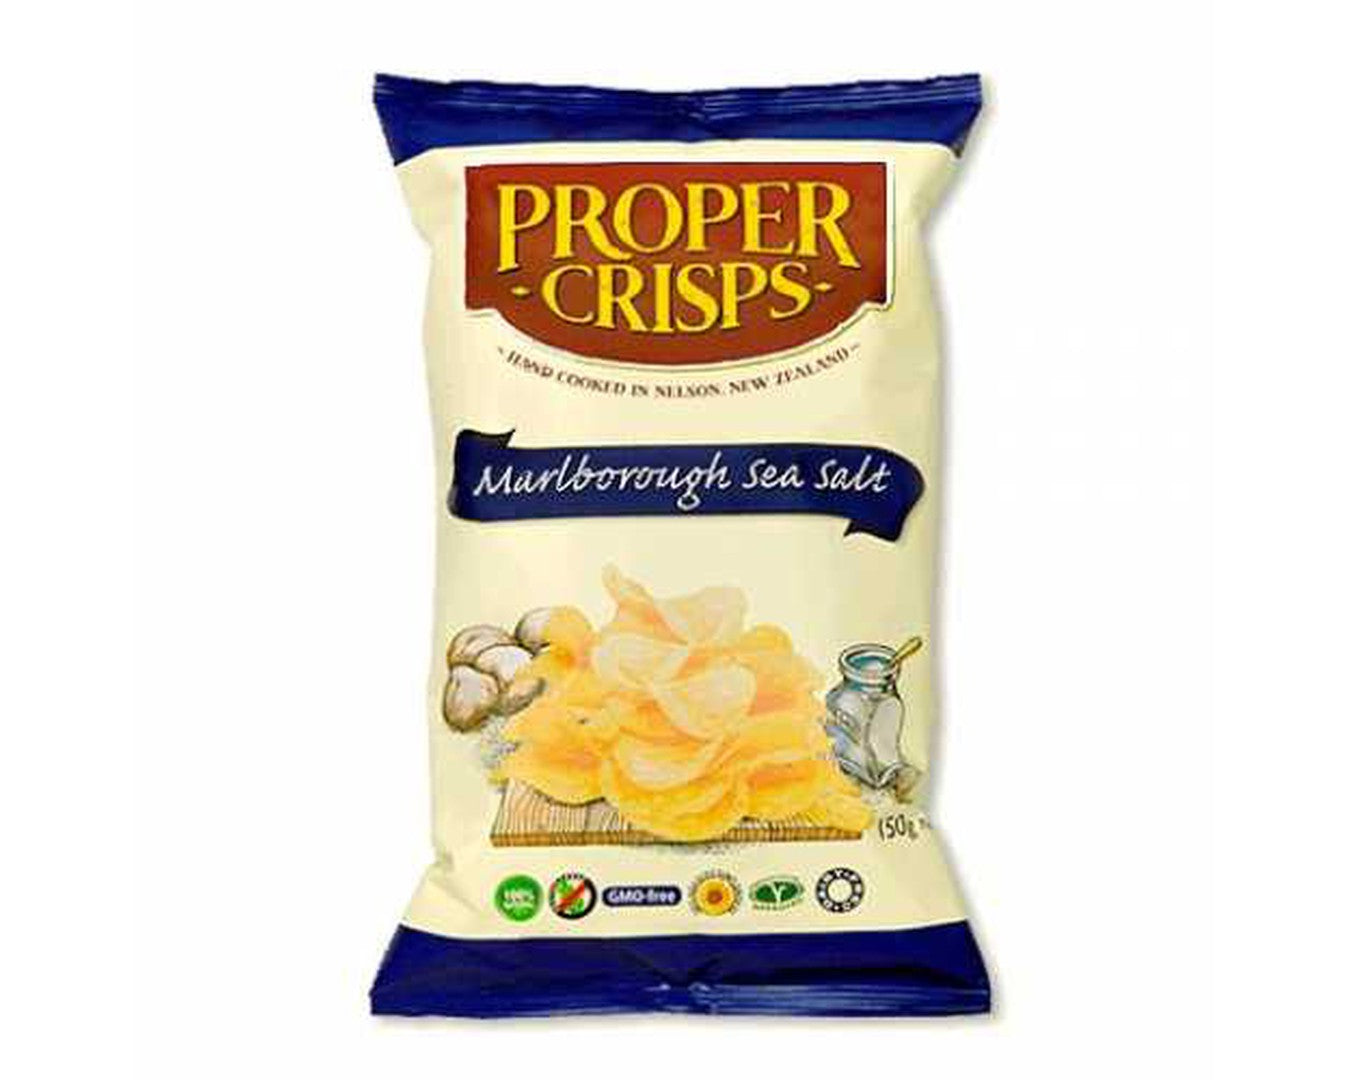 Proper Crisps Chips Marlborough Sea Salt 150g-Chips-The Local Basket